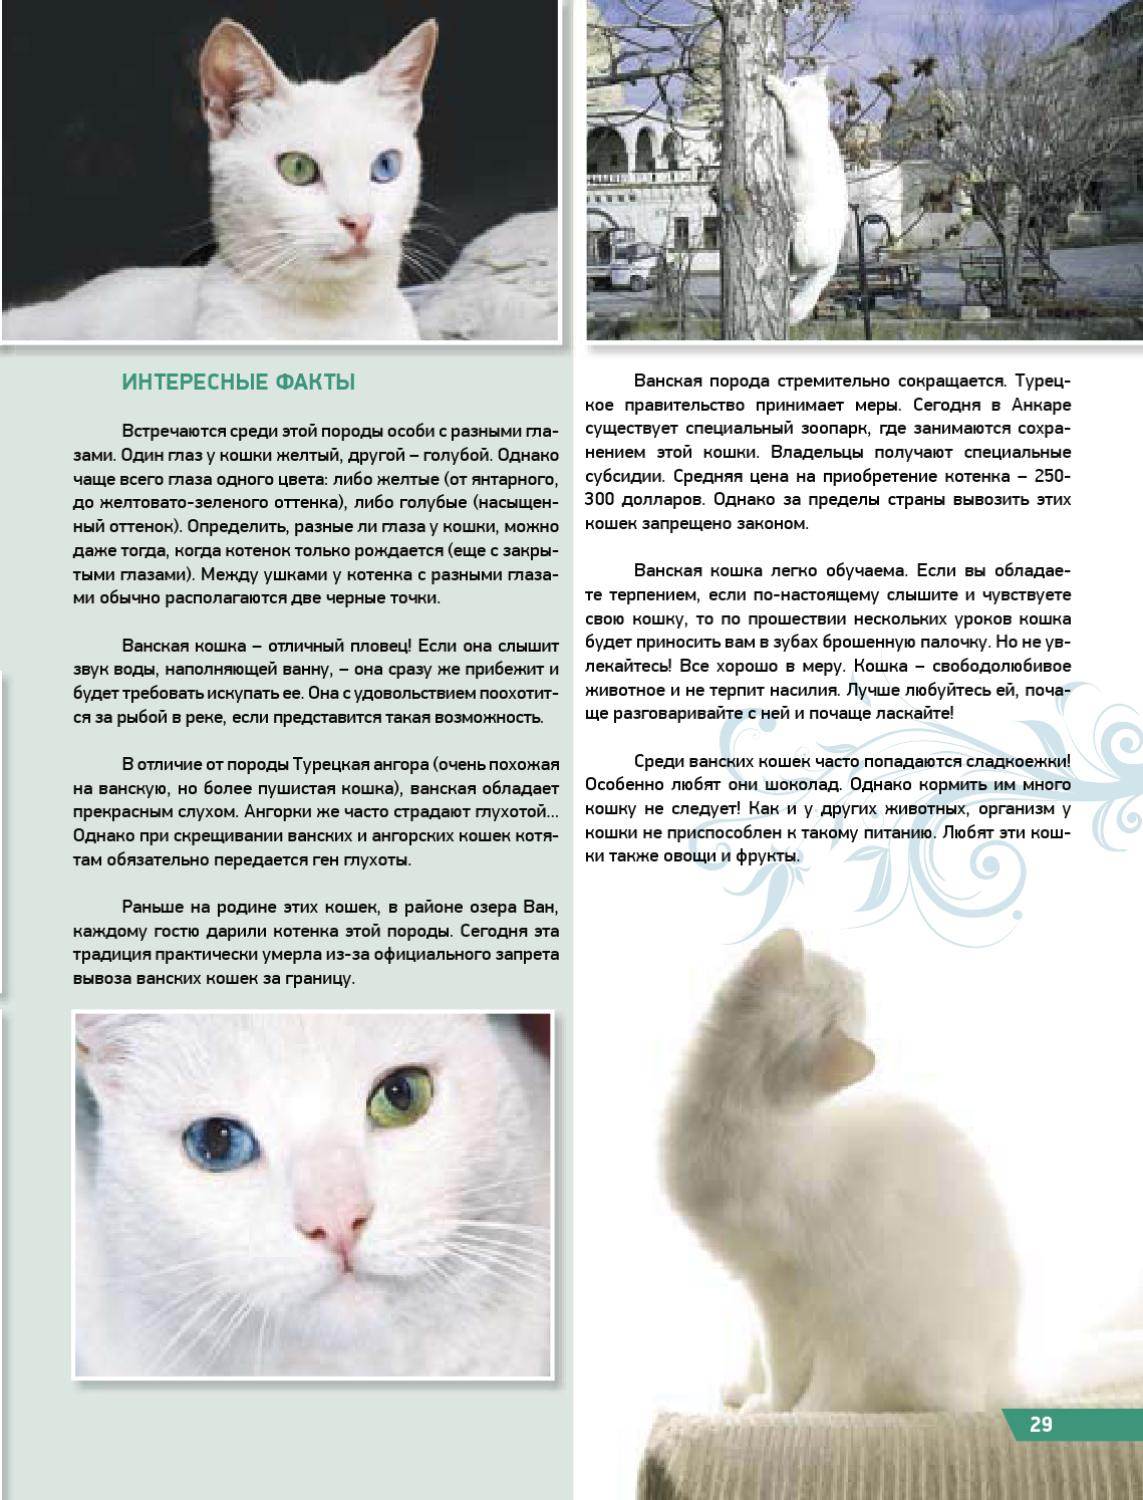 Кошка турецкий ван: все о породе, уход и воспитание, содержание